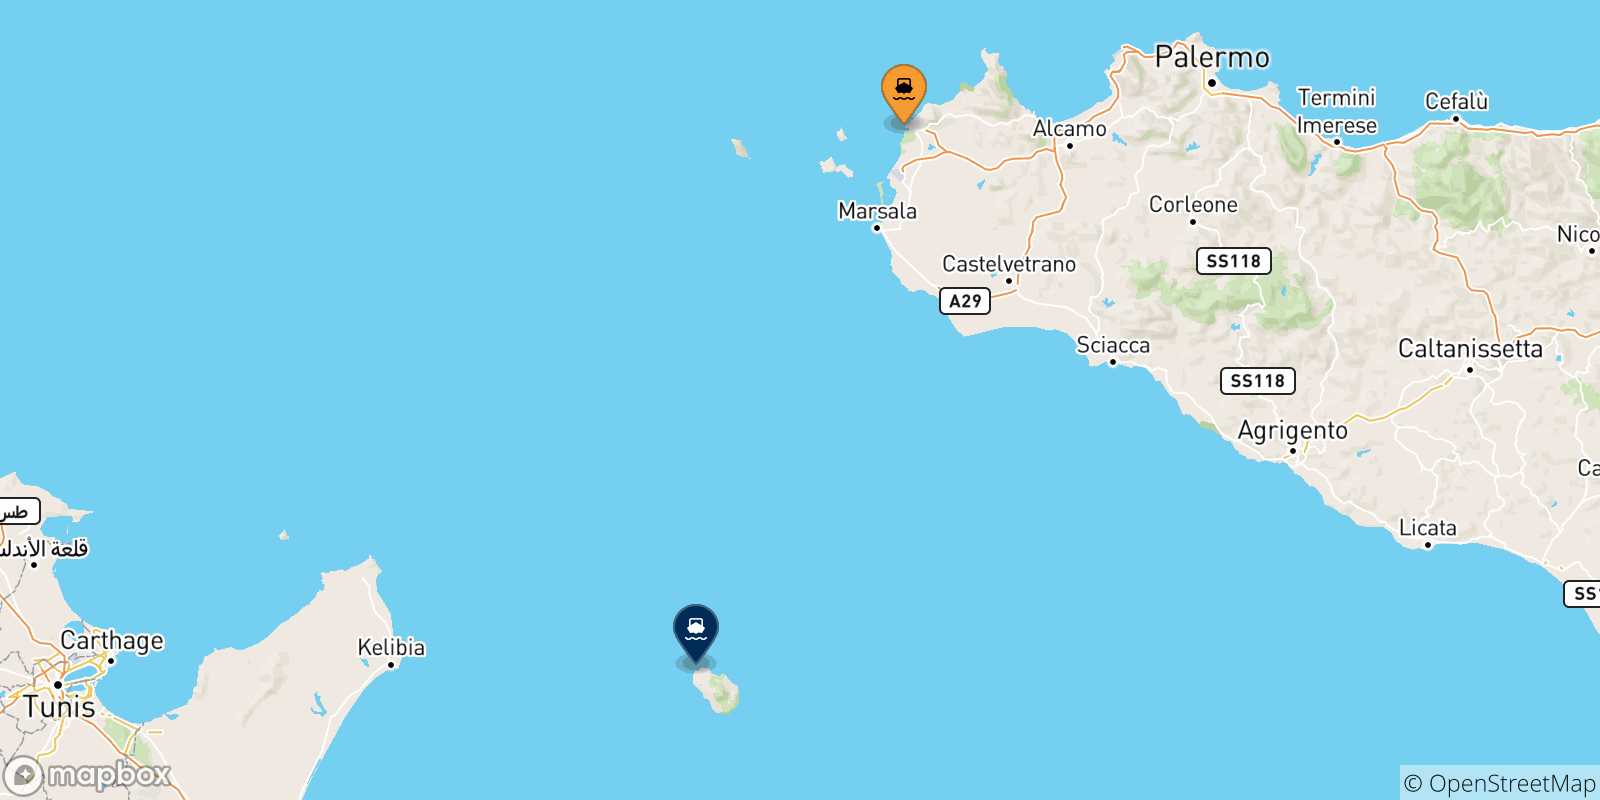 Mappa delle possibili rotte tra l'Italia e Pantelleria